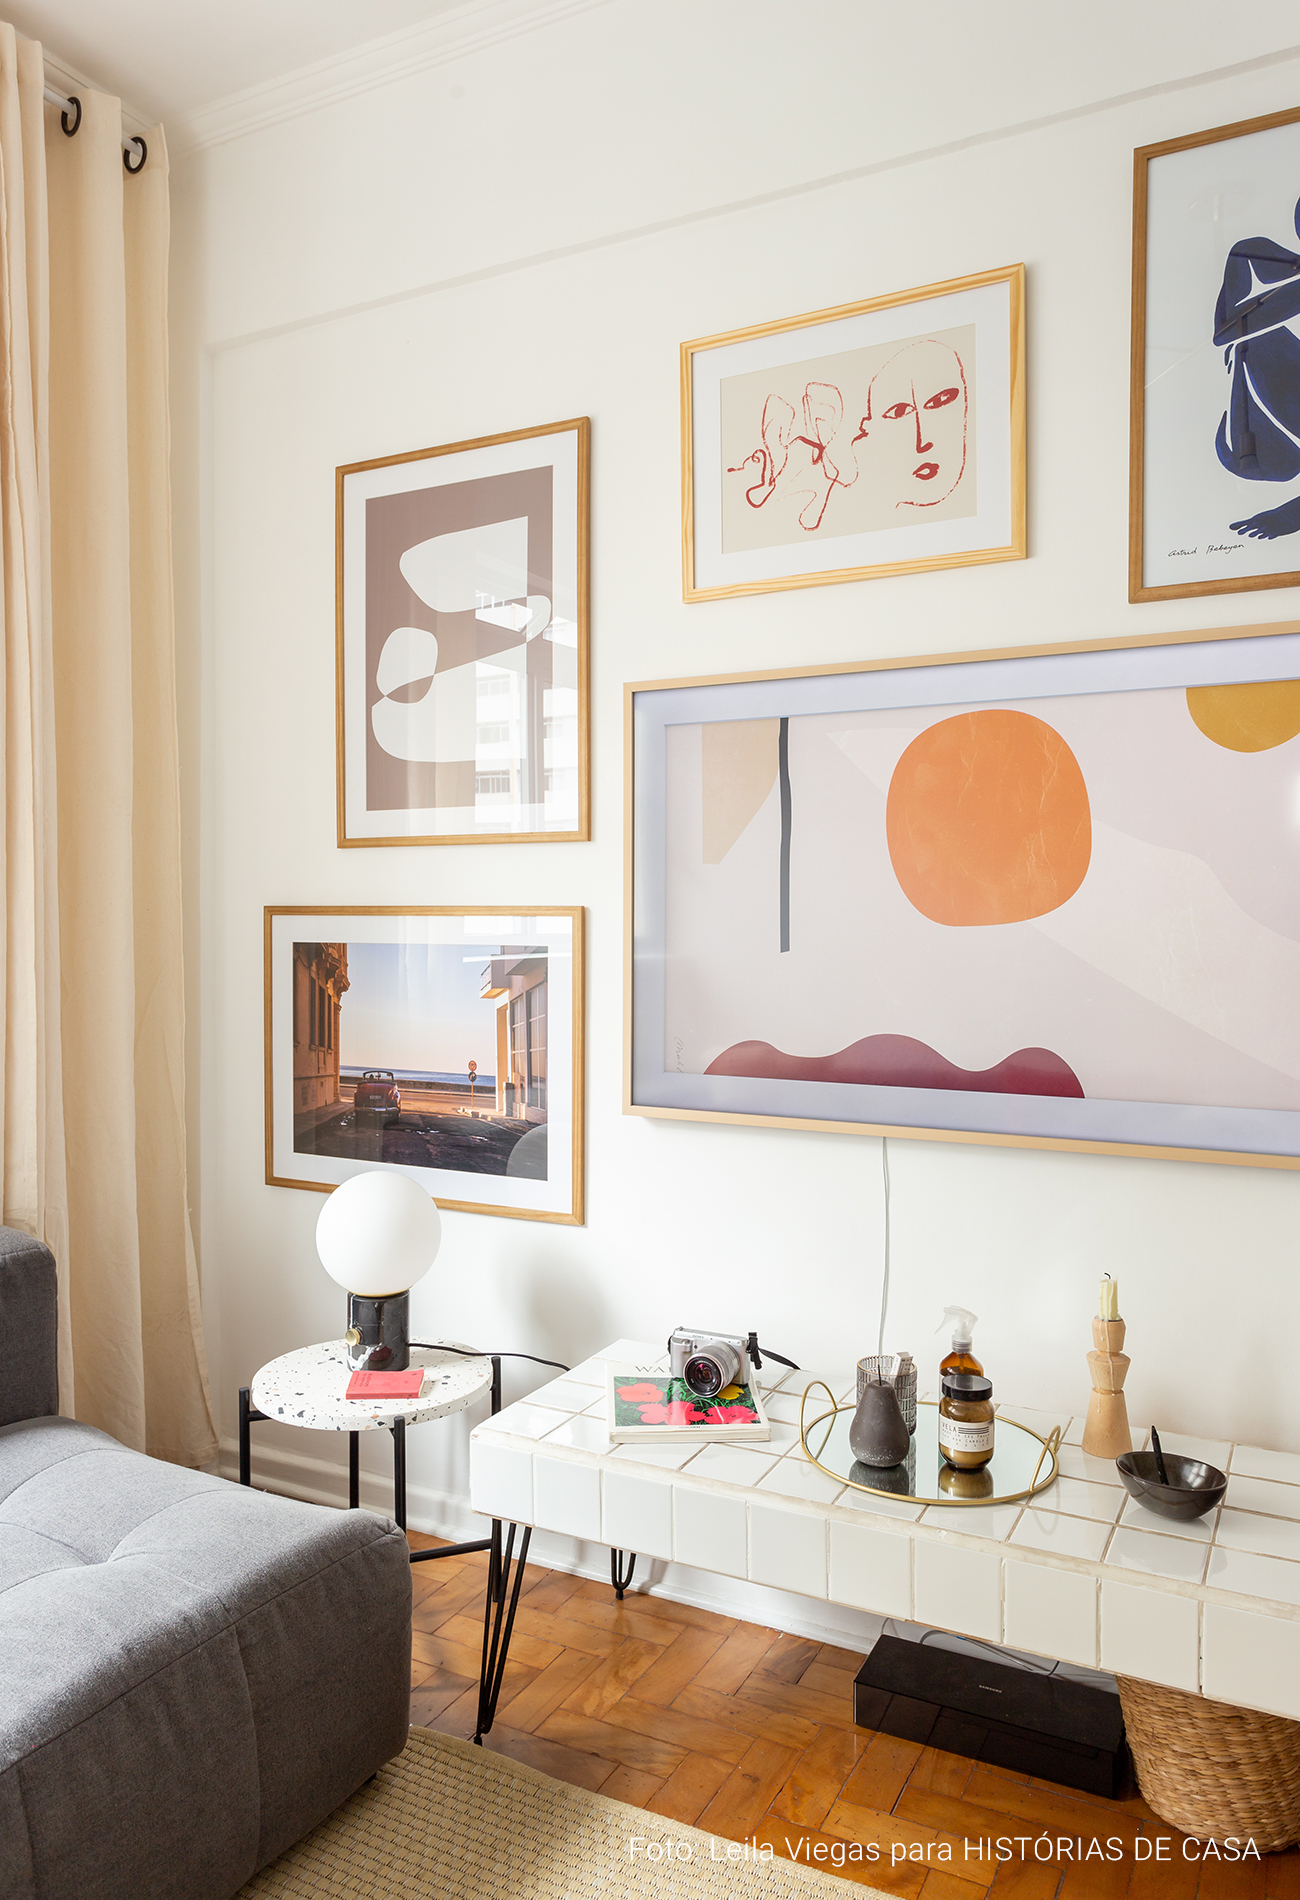 Apartamento com muitos quadros na decoração e estilo minimalista